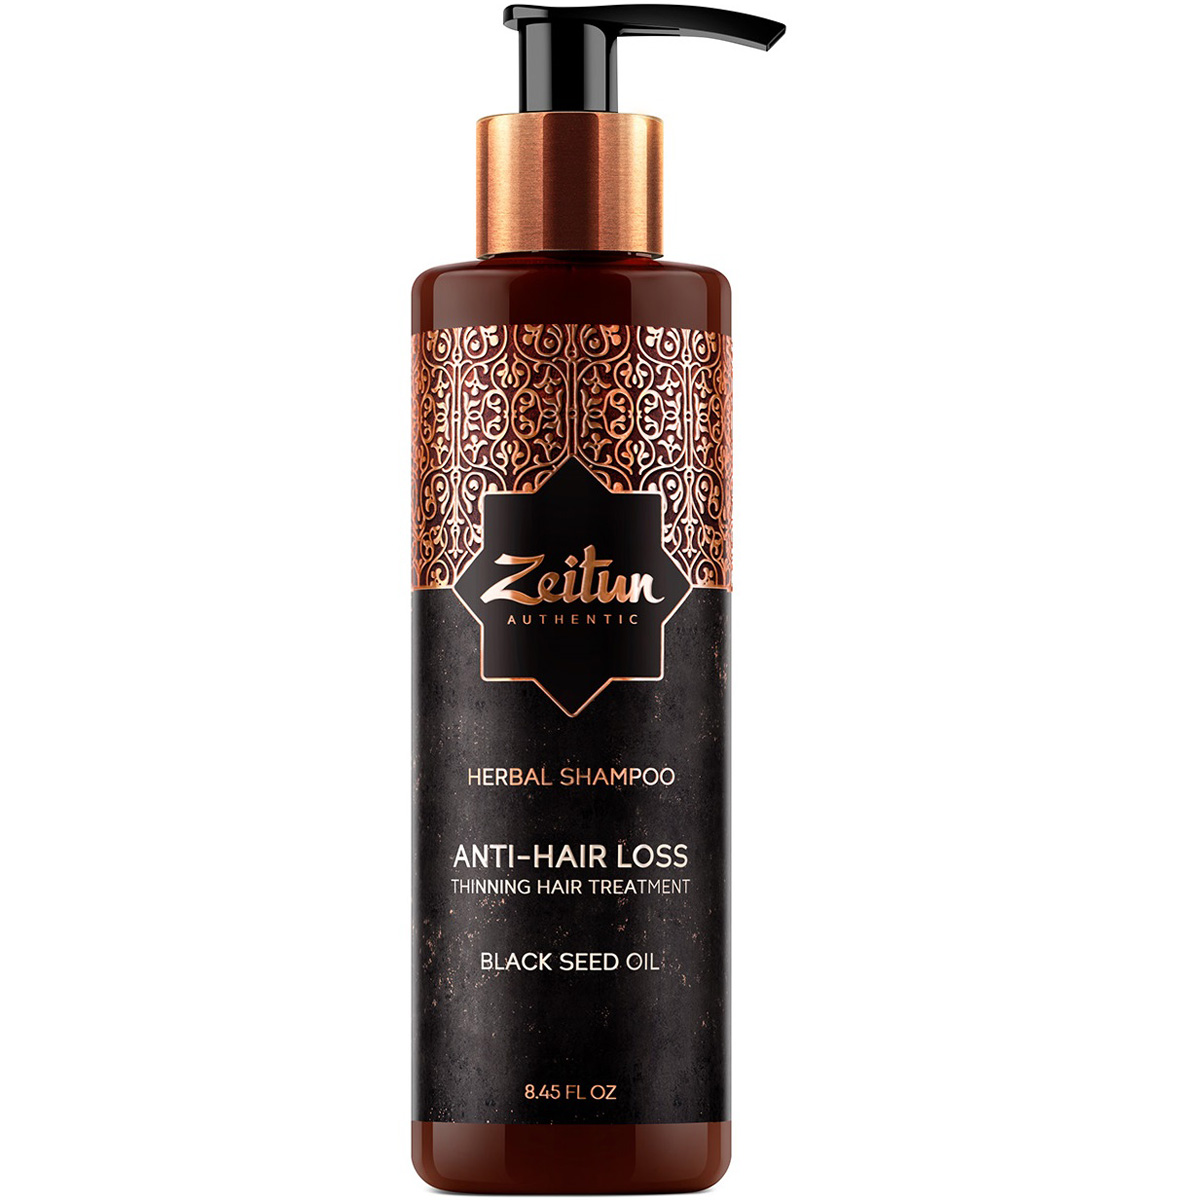 Zeitun Укрепляющий фито-шампунь с маслом черного тмина против выпадения волос Anti-Hair Loss, 250 мл (Zeitun, Authentic) фотографии